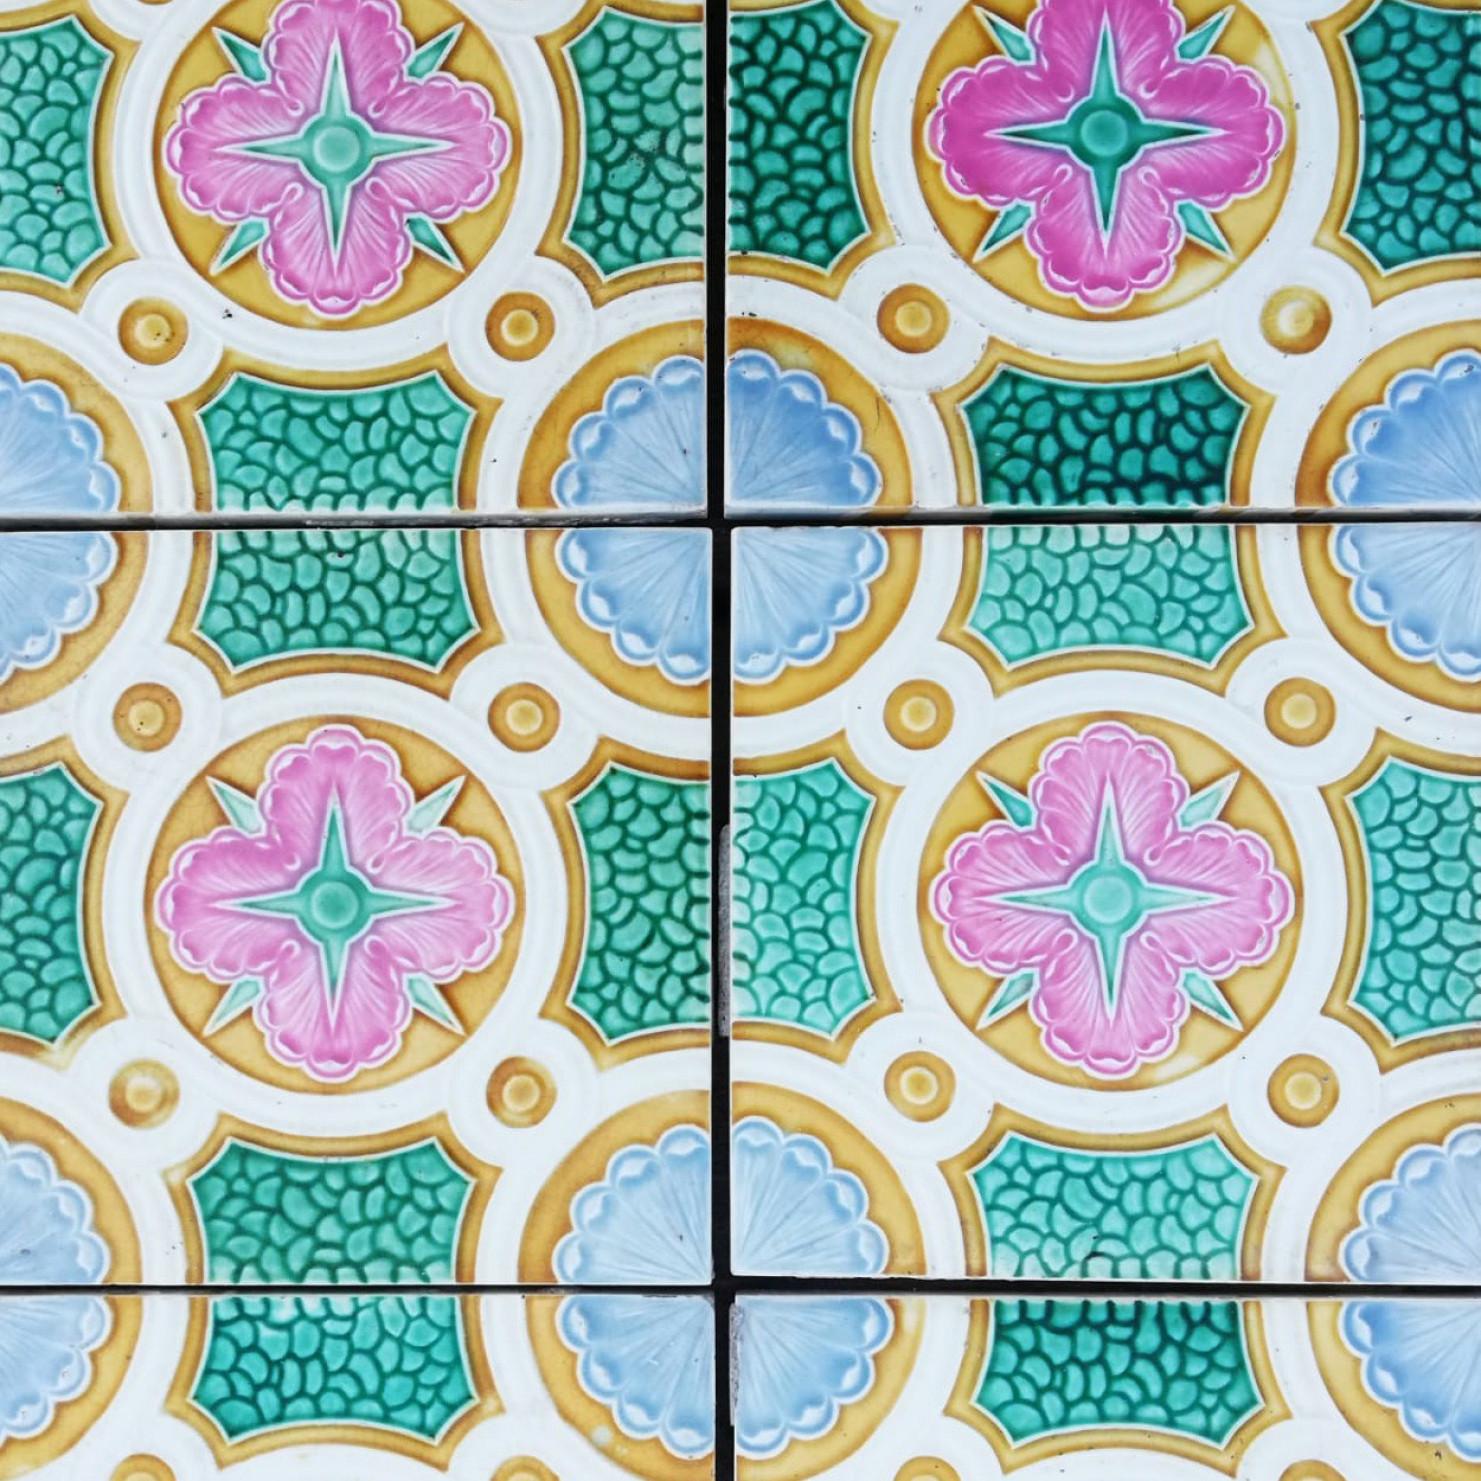 Colorful Antique Ceramic Tiles by Faiencerie de Bouffioulx, Belgium 1920s For Sale 5